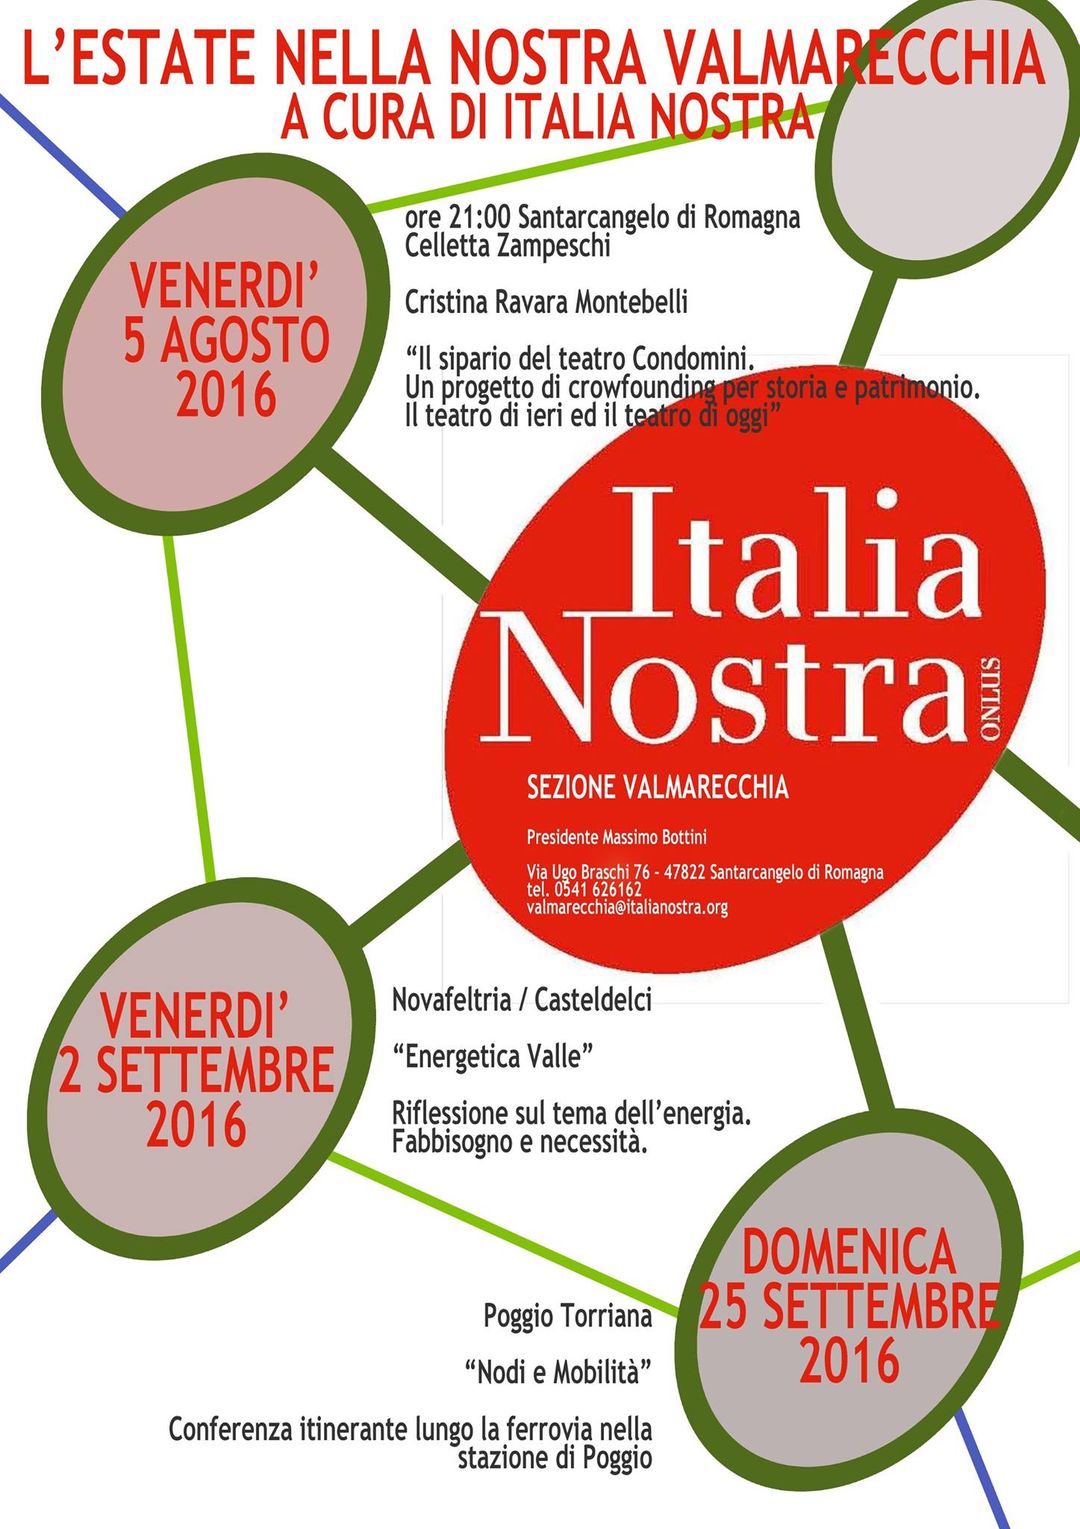 Cristina Ravara Montebelli, Il sipario del teatro dei Condomini di Santarcangelo, 5 agosto 2016 Italia Nostra, crowdfunding